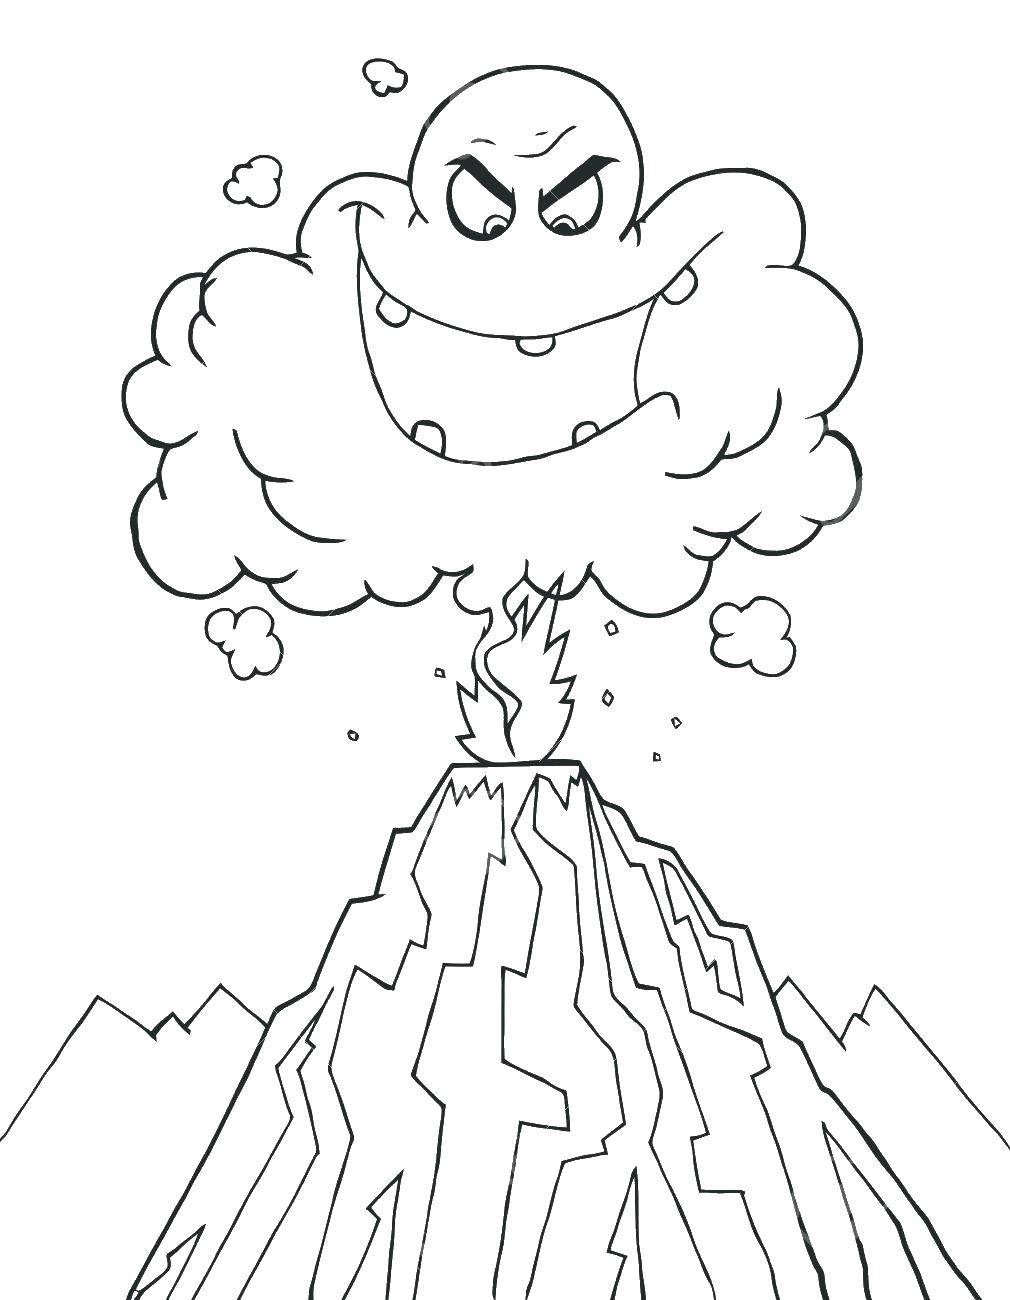 Опис: розмальовки  Виверження вулкана і дим. Категорія: Вулкан. Теги:  виверження, дим.